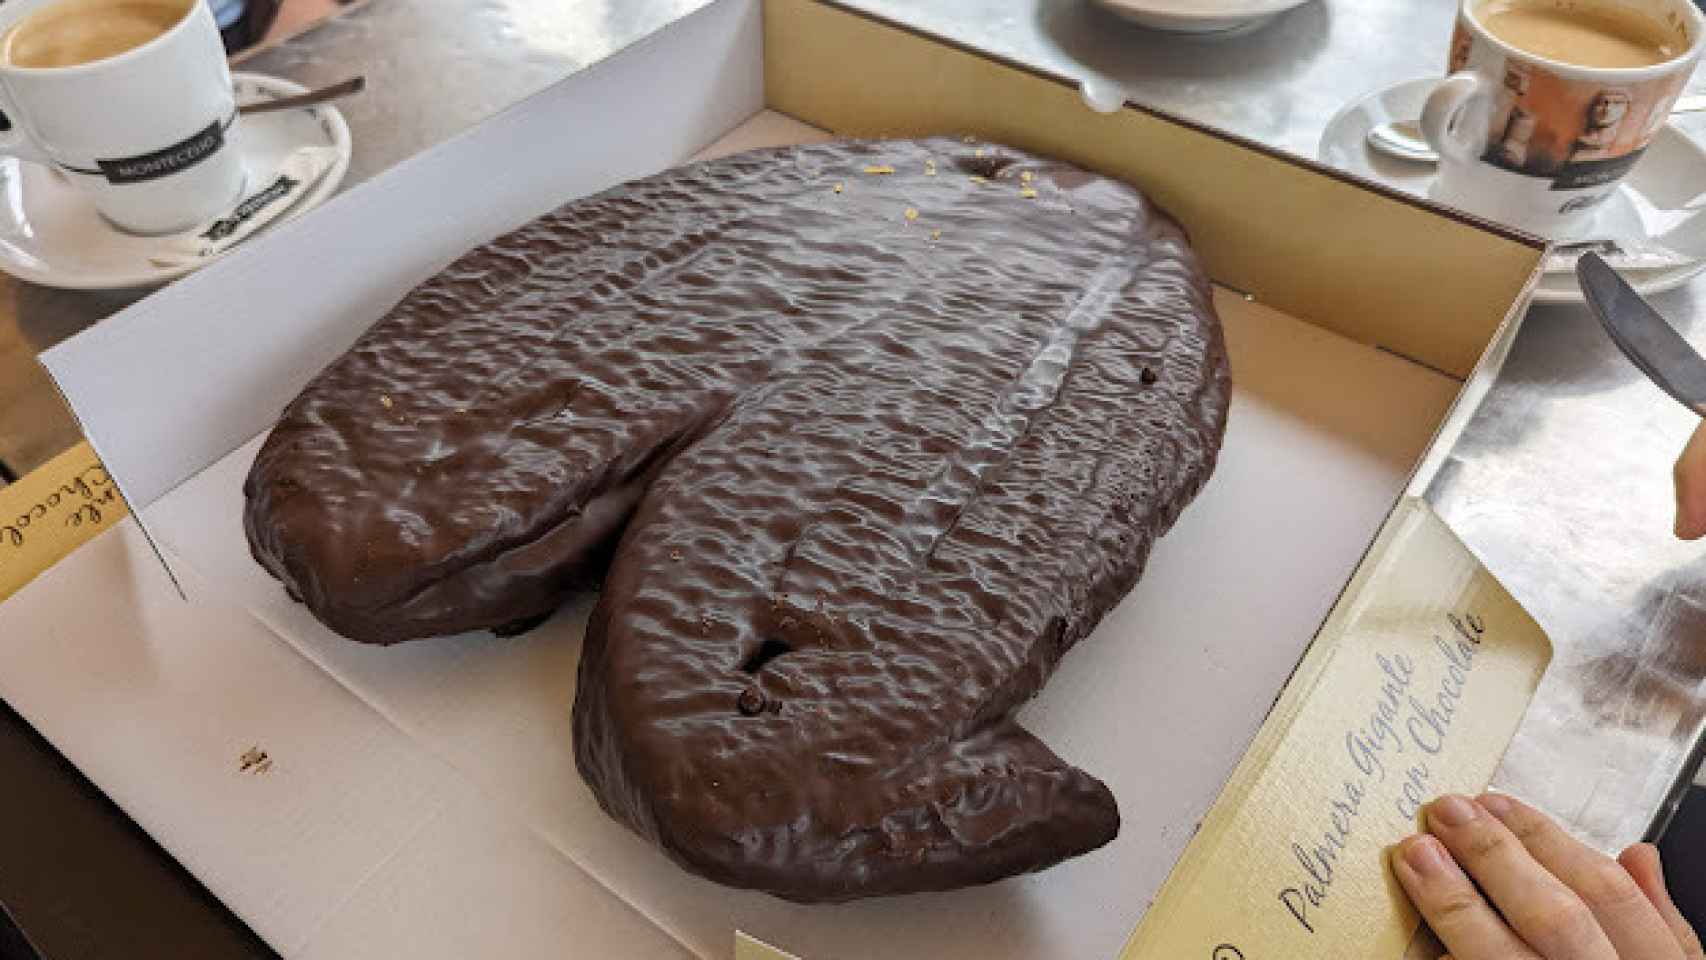 Palmera de chocolate gigante de Cafetería Royal III.